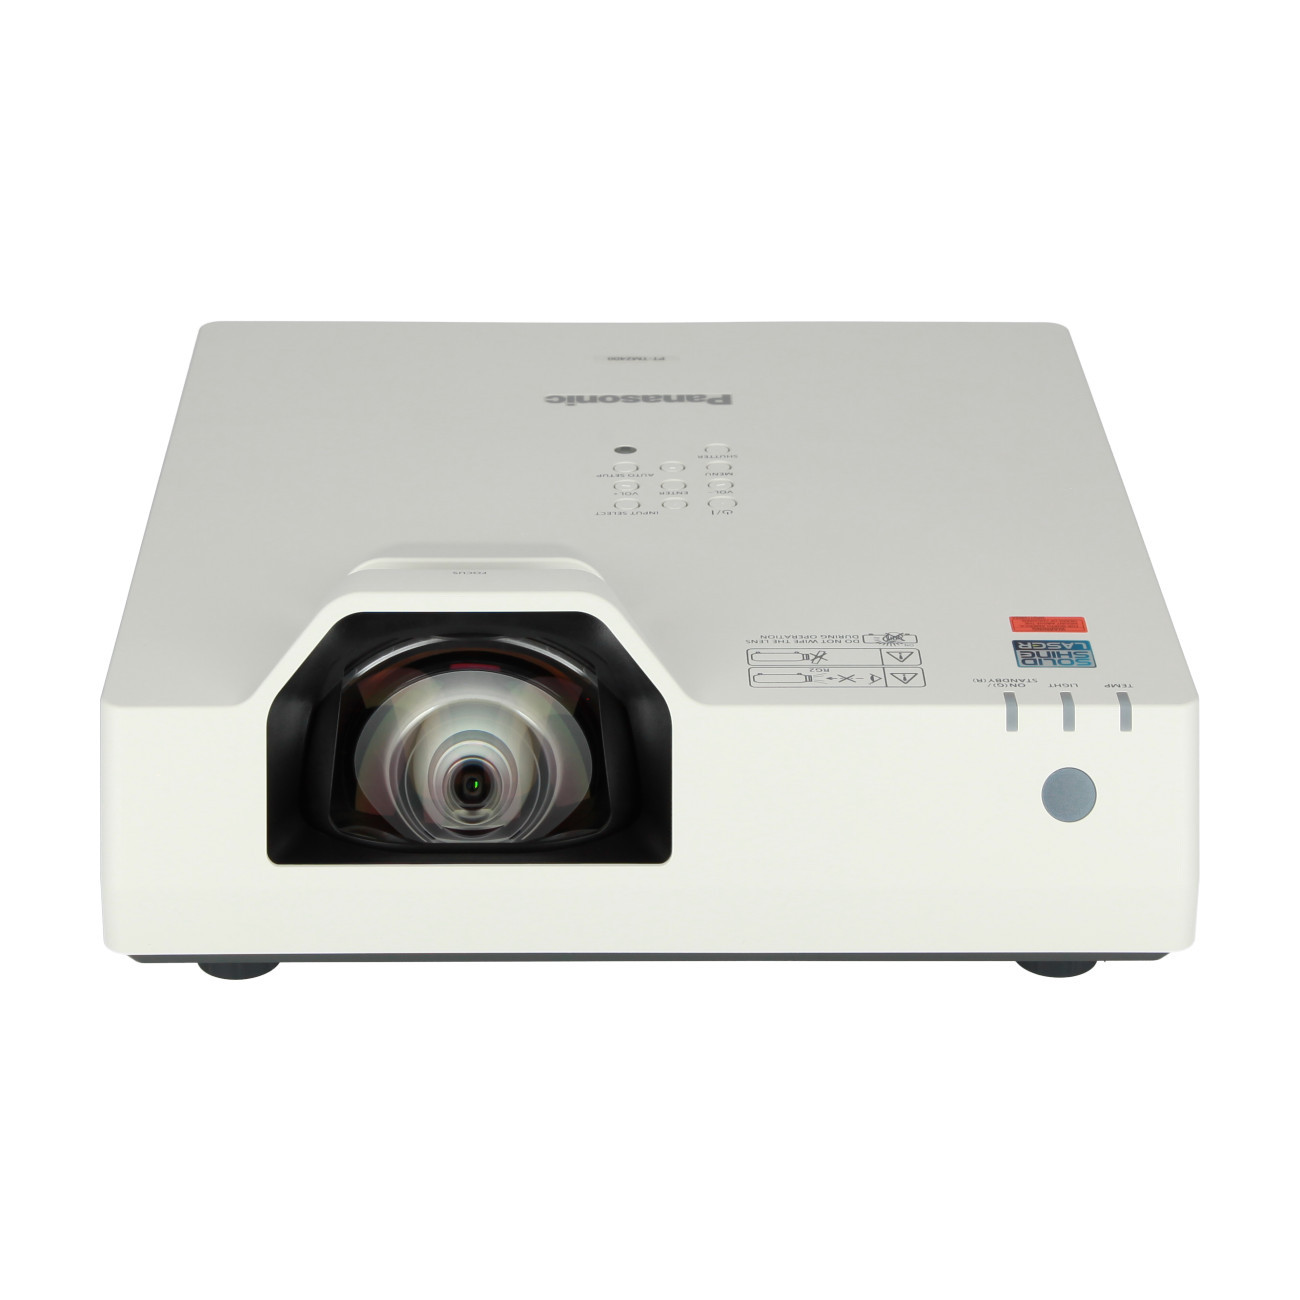 Vorschau: Panasonic PT-TMZ400, Beamer, Laser-Kurzdistanz Beamer mit WUXGA und 4000 ANSI-Lumen - Demo